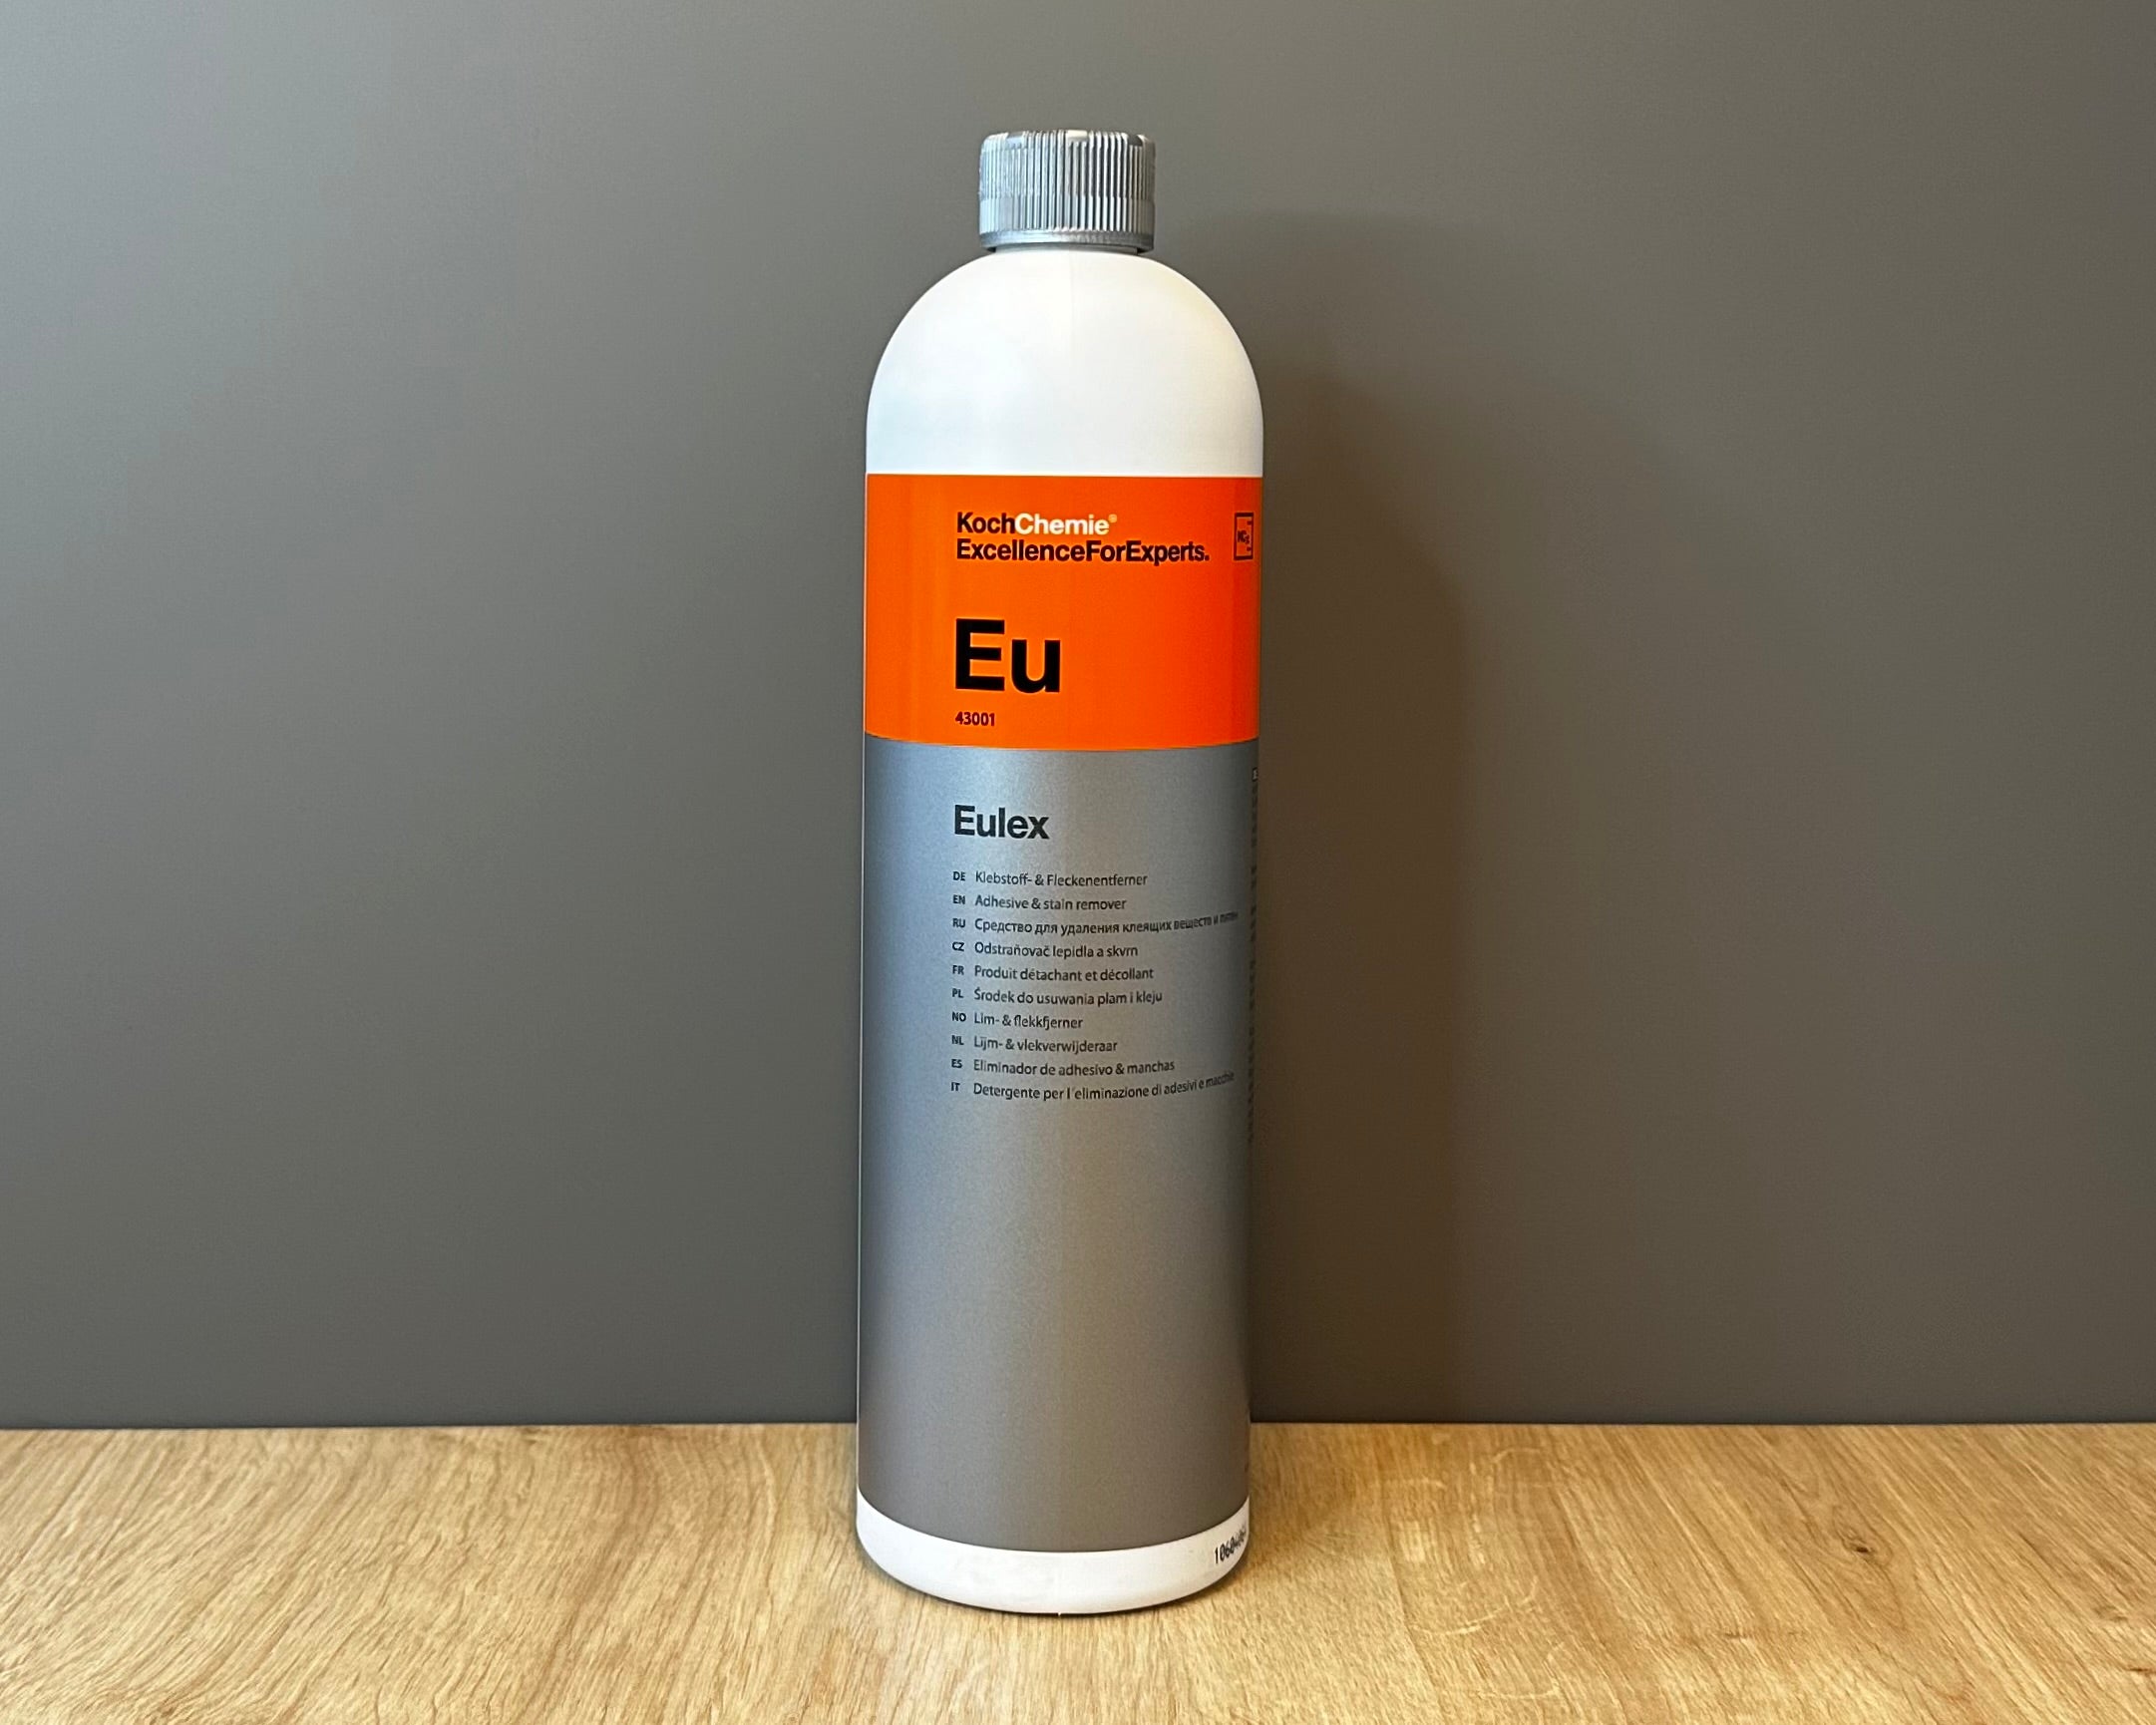 Koch-Chemie Eu (Eulex), Adhesive Remover